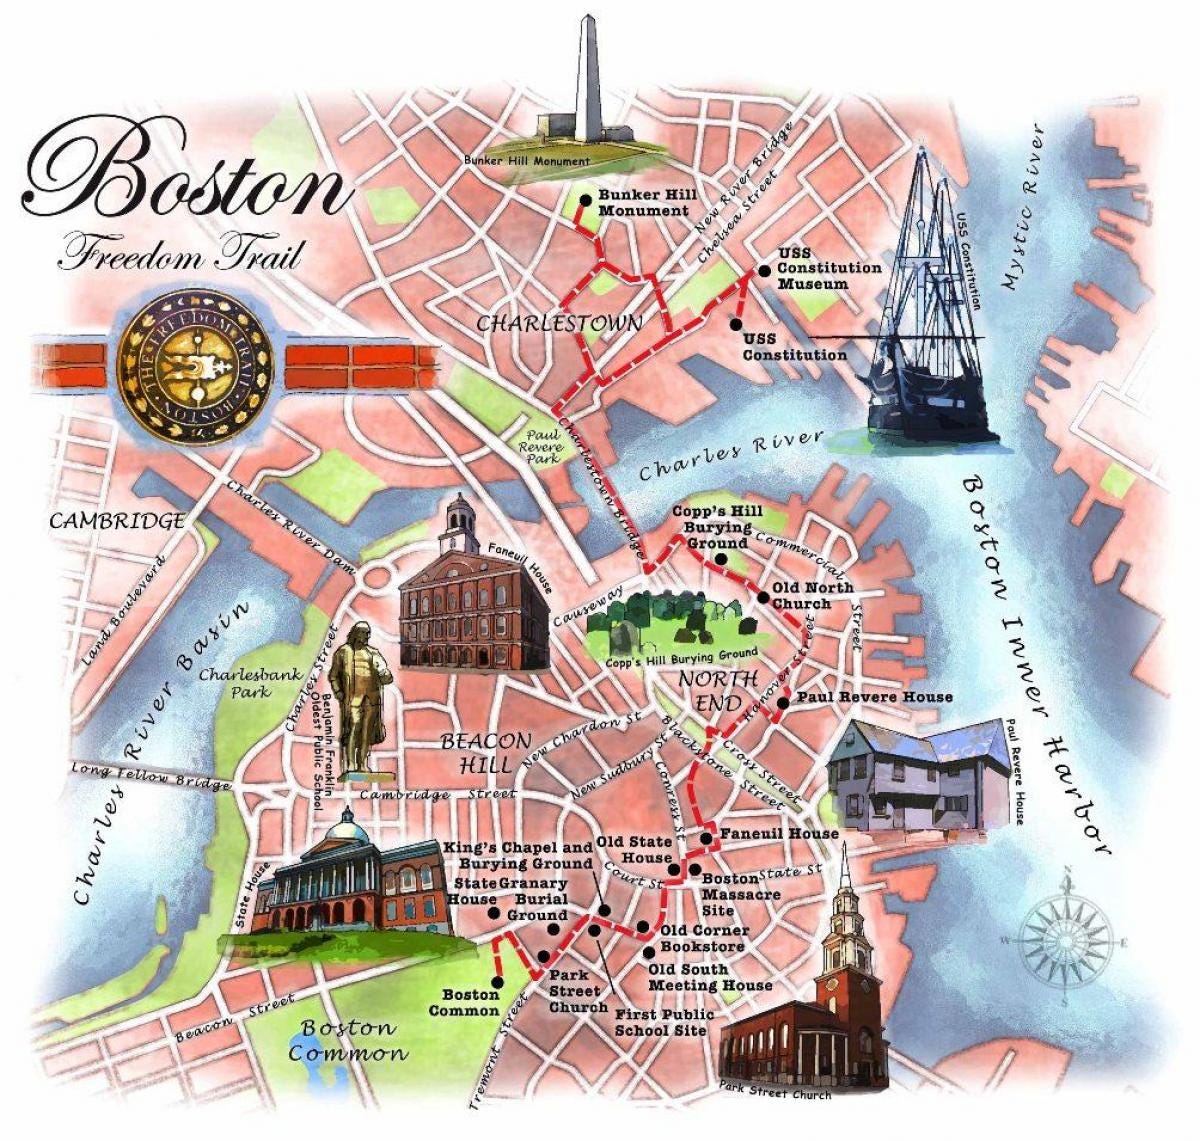 Boston freedom trail Karte - Freedom trail Karte von Boston (Vereinigte ...